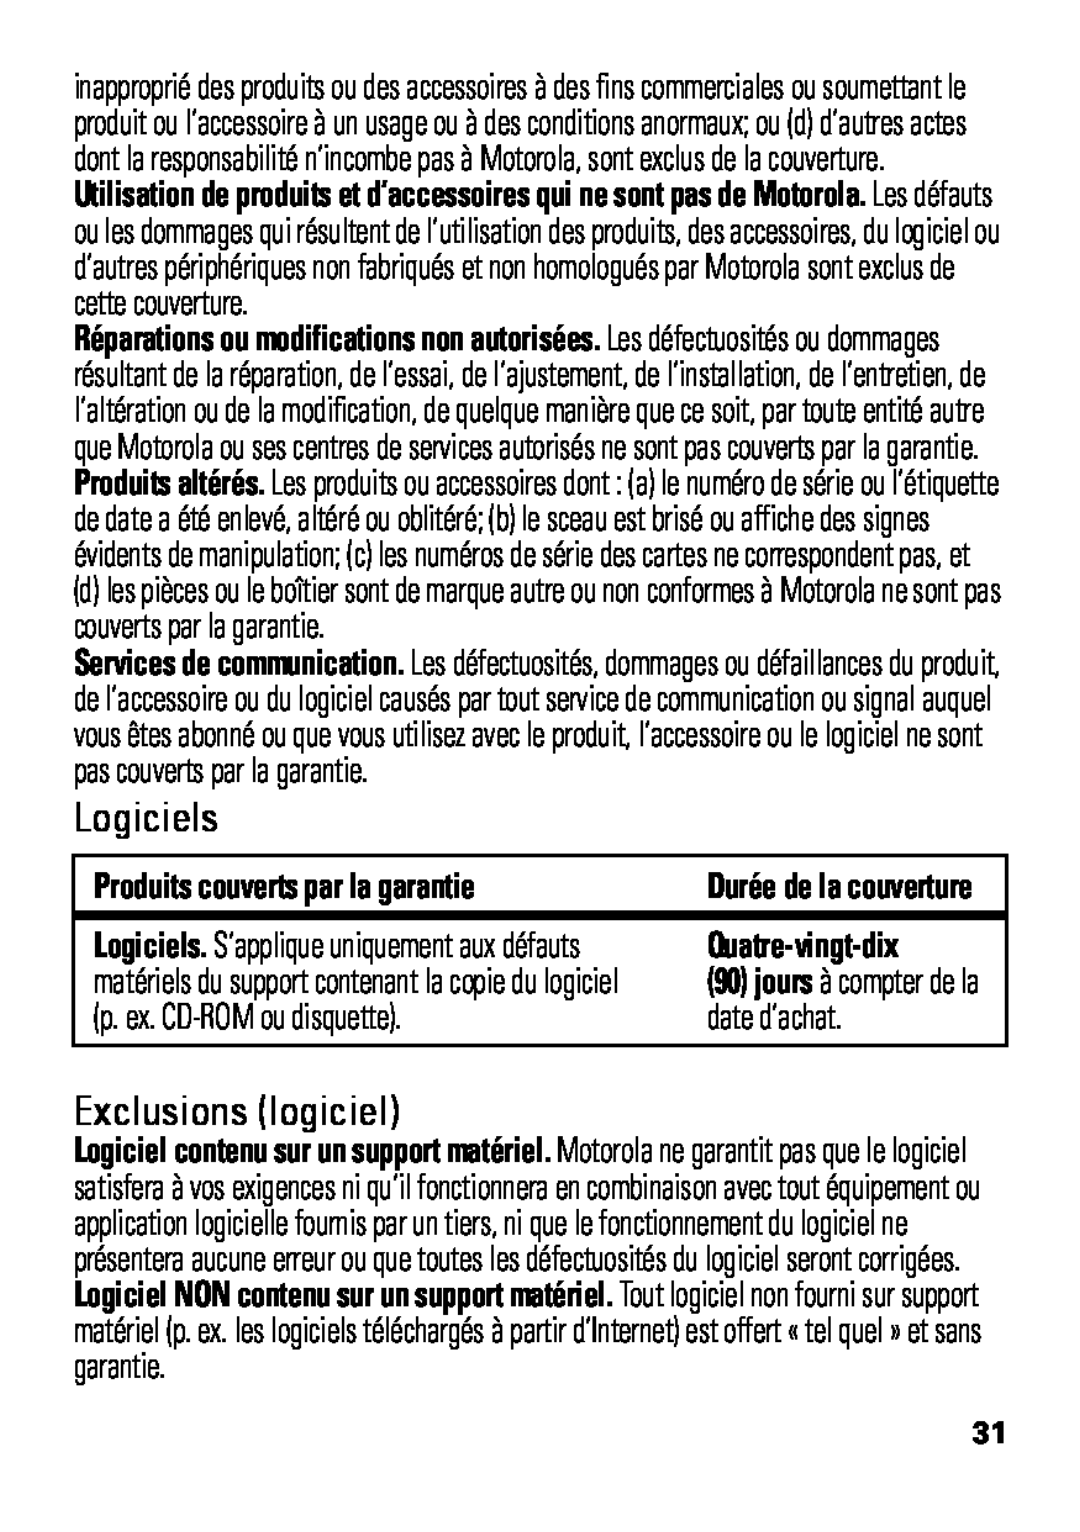 Motorola HX550 manual Produits couverts par la garantie, Quatre-vingt-dix, p. ex. CD-ROMou disquette, date d’achat 